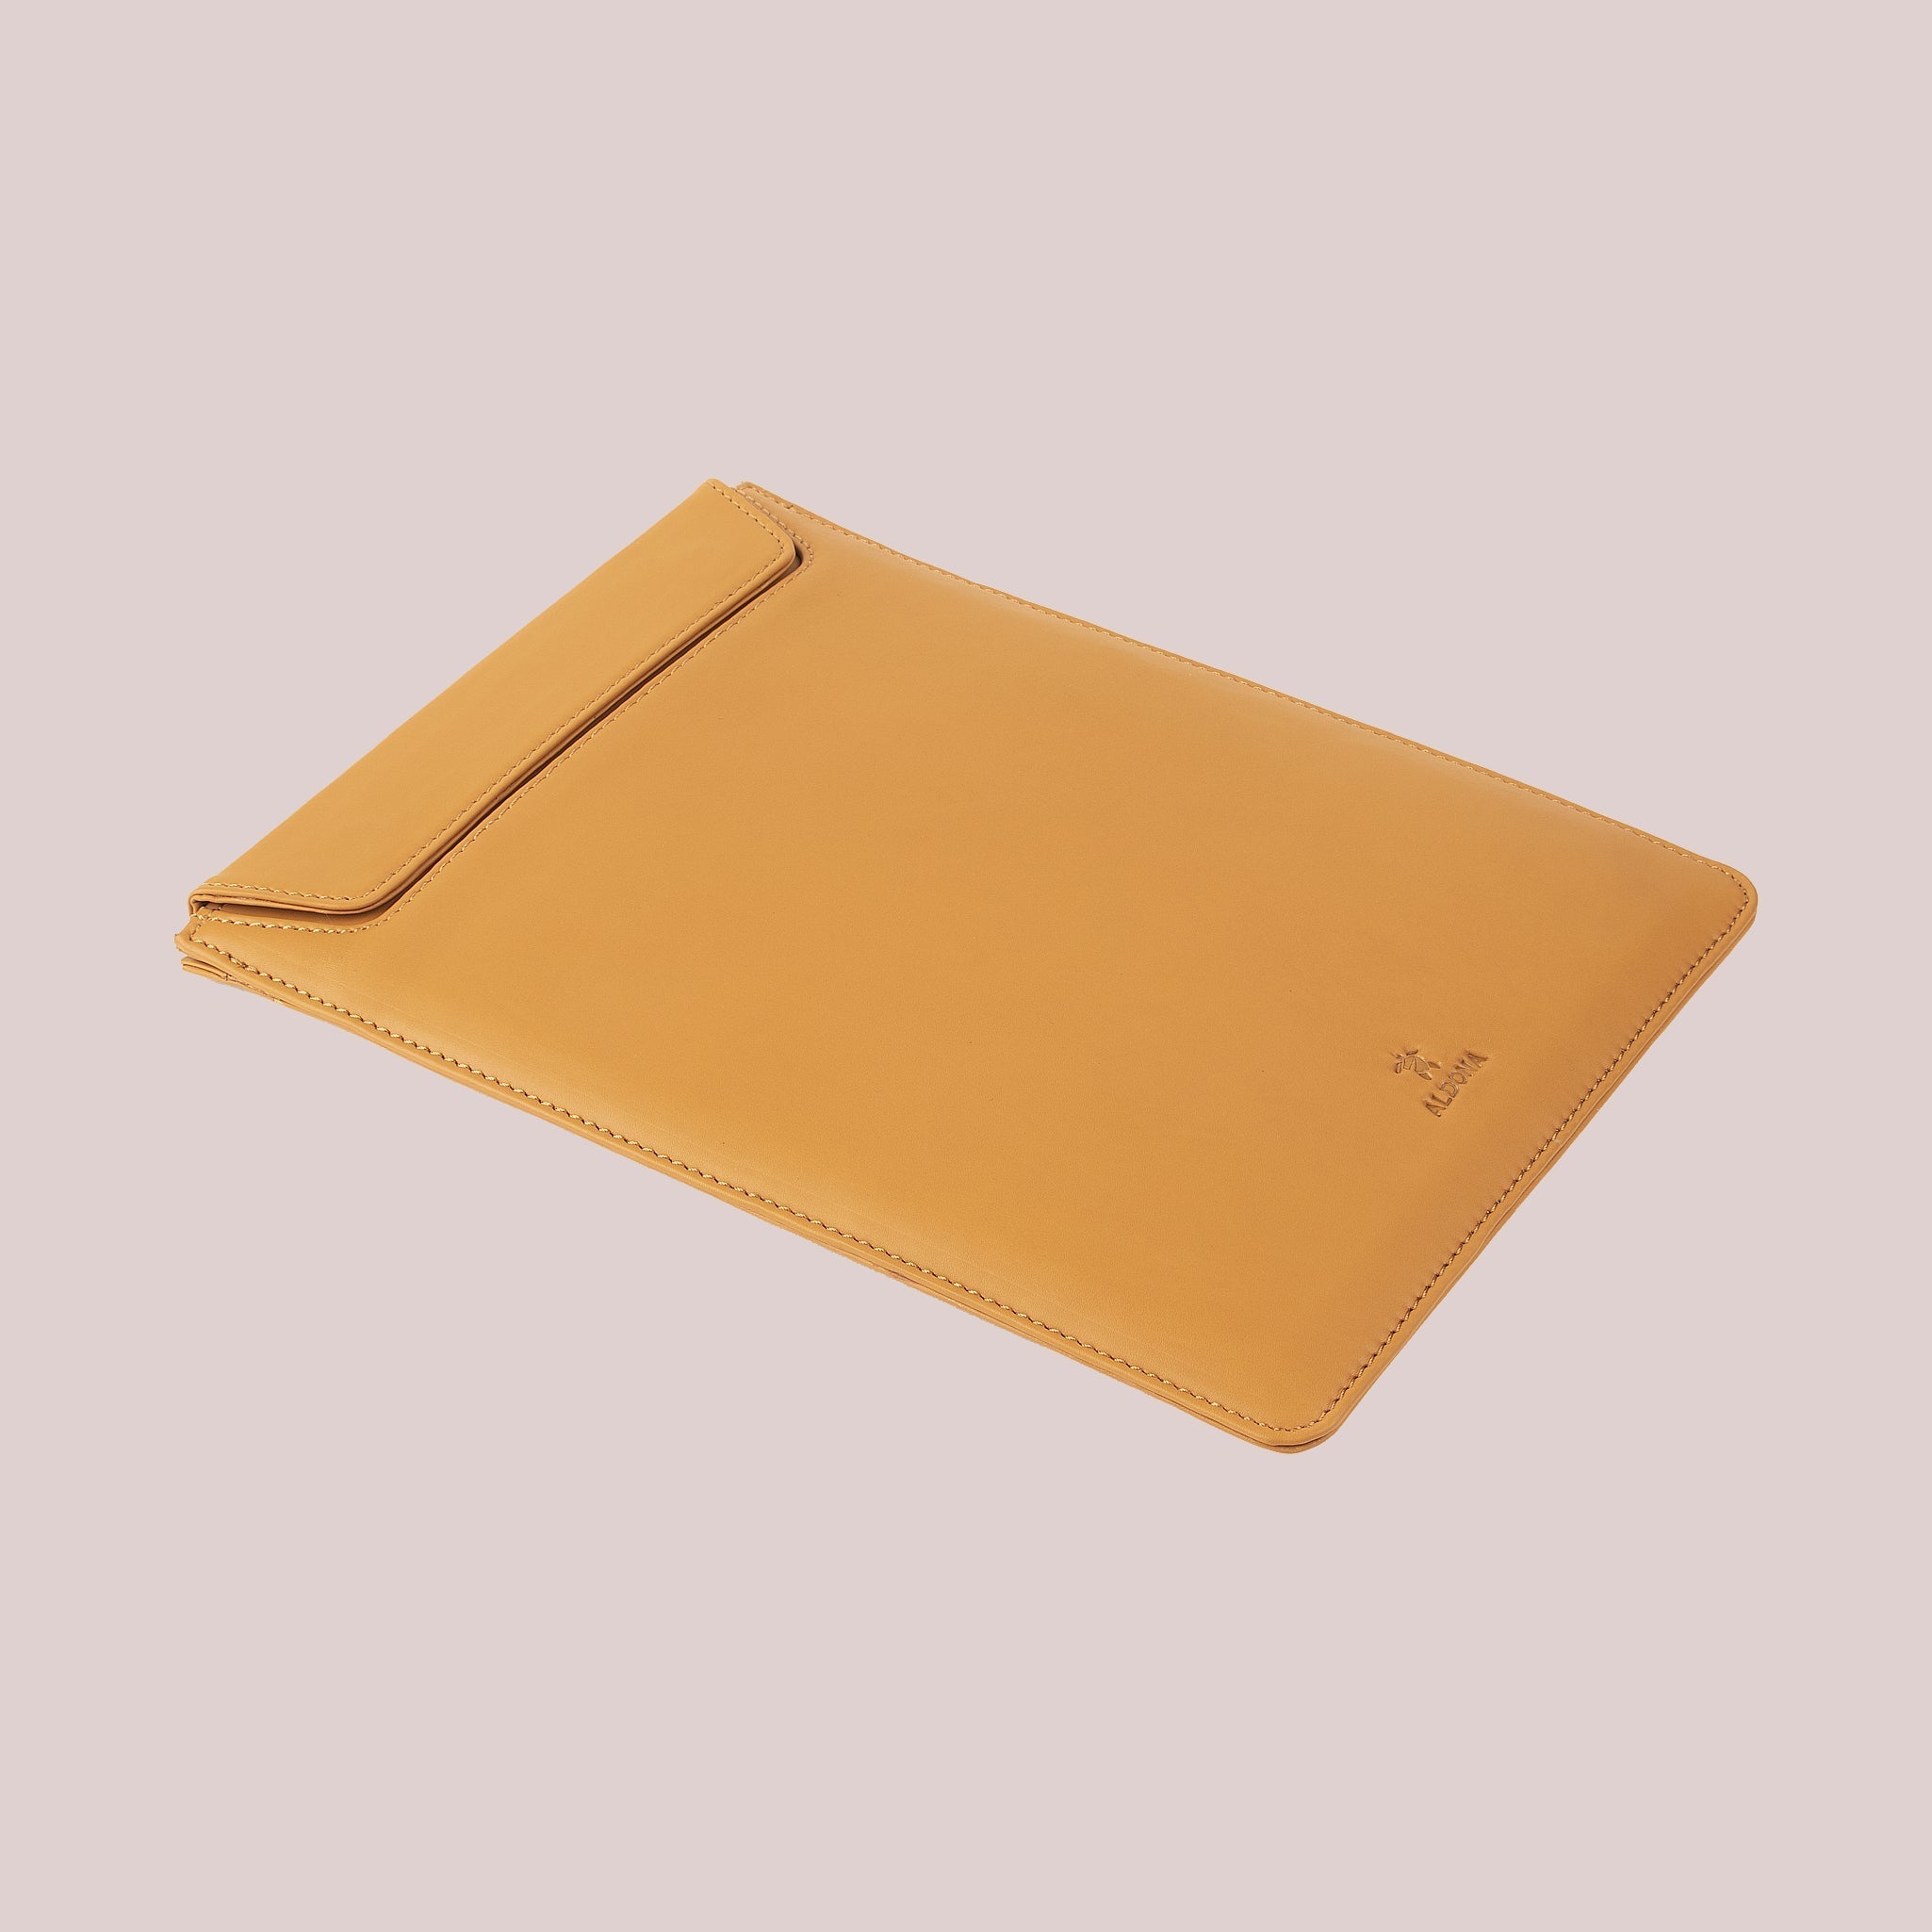 Buy Online Tan Color MacBook Pro 13 Note Sleeves